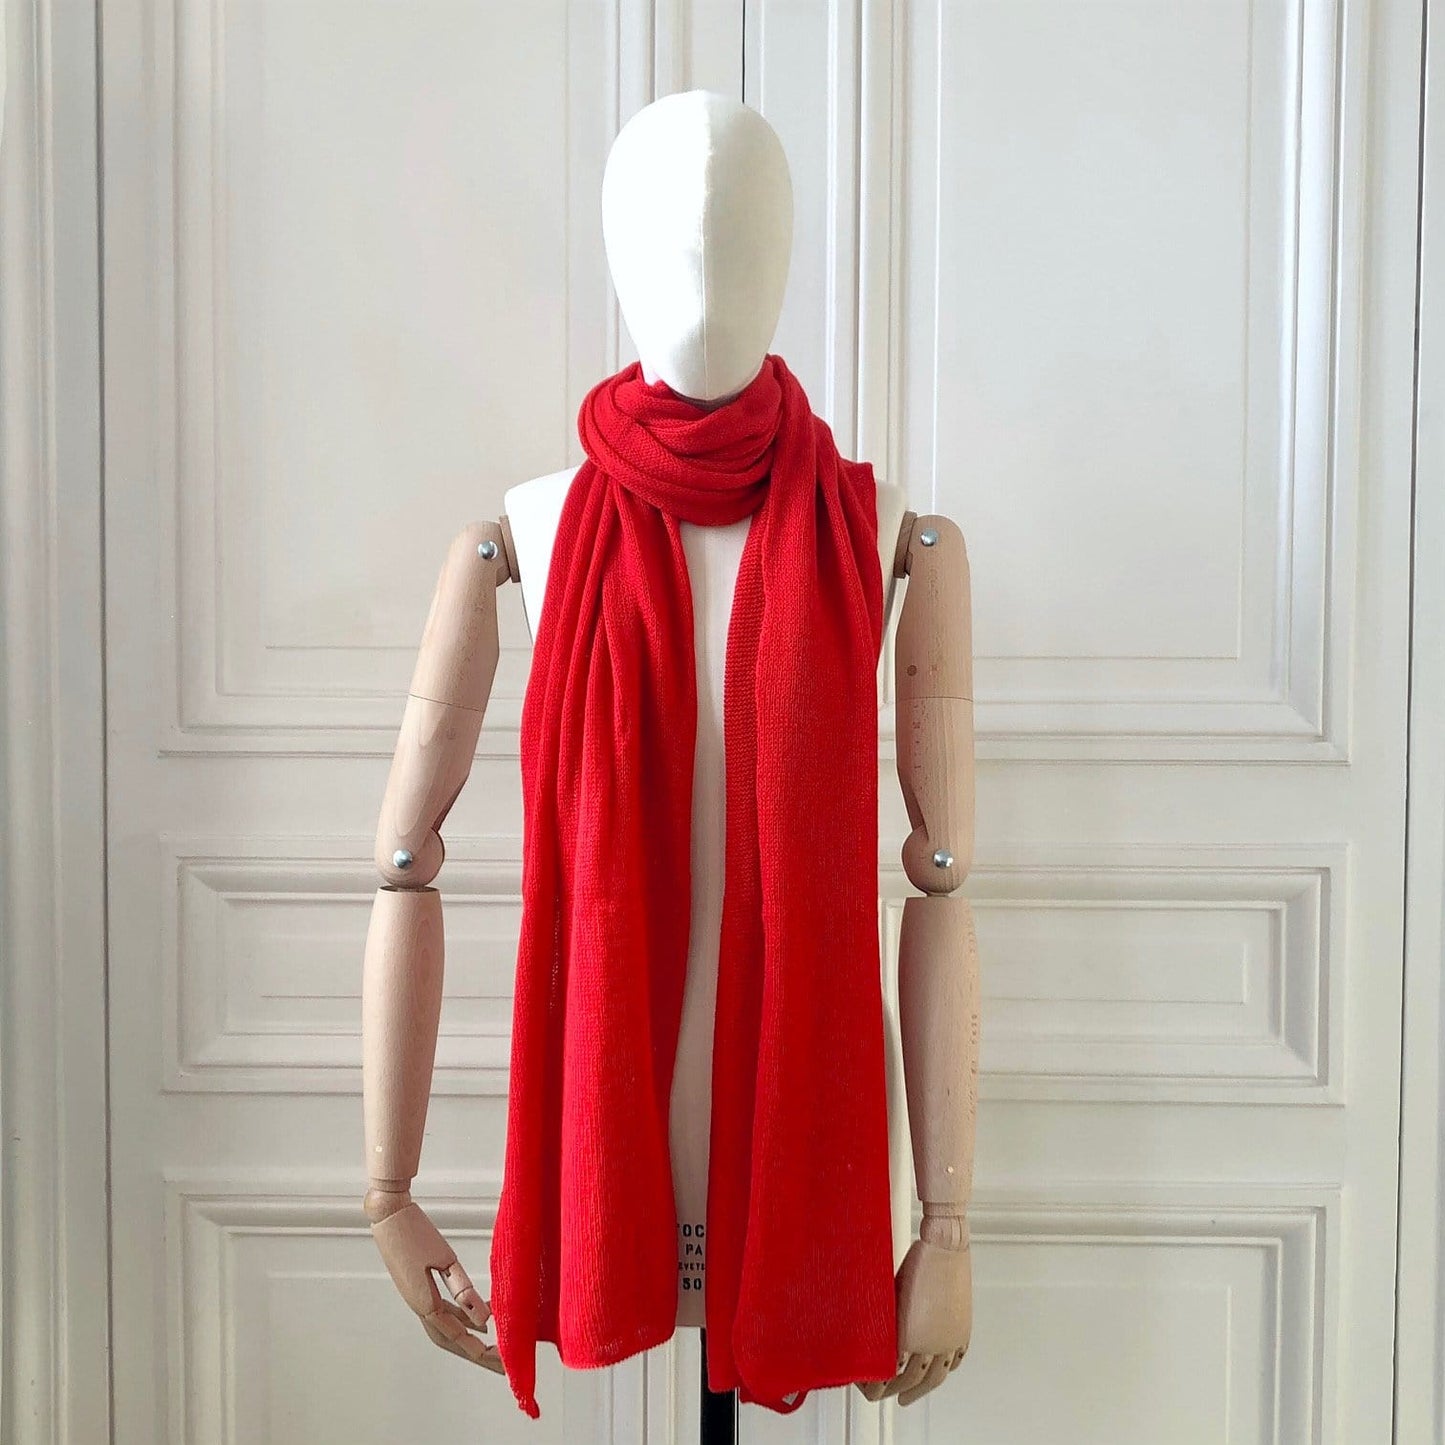 Echarpe rouge tricotée en France 200x60 cm 100% cachemire maille mousseuse